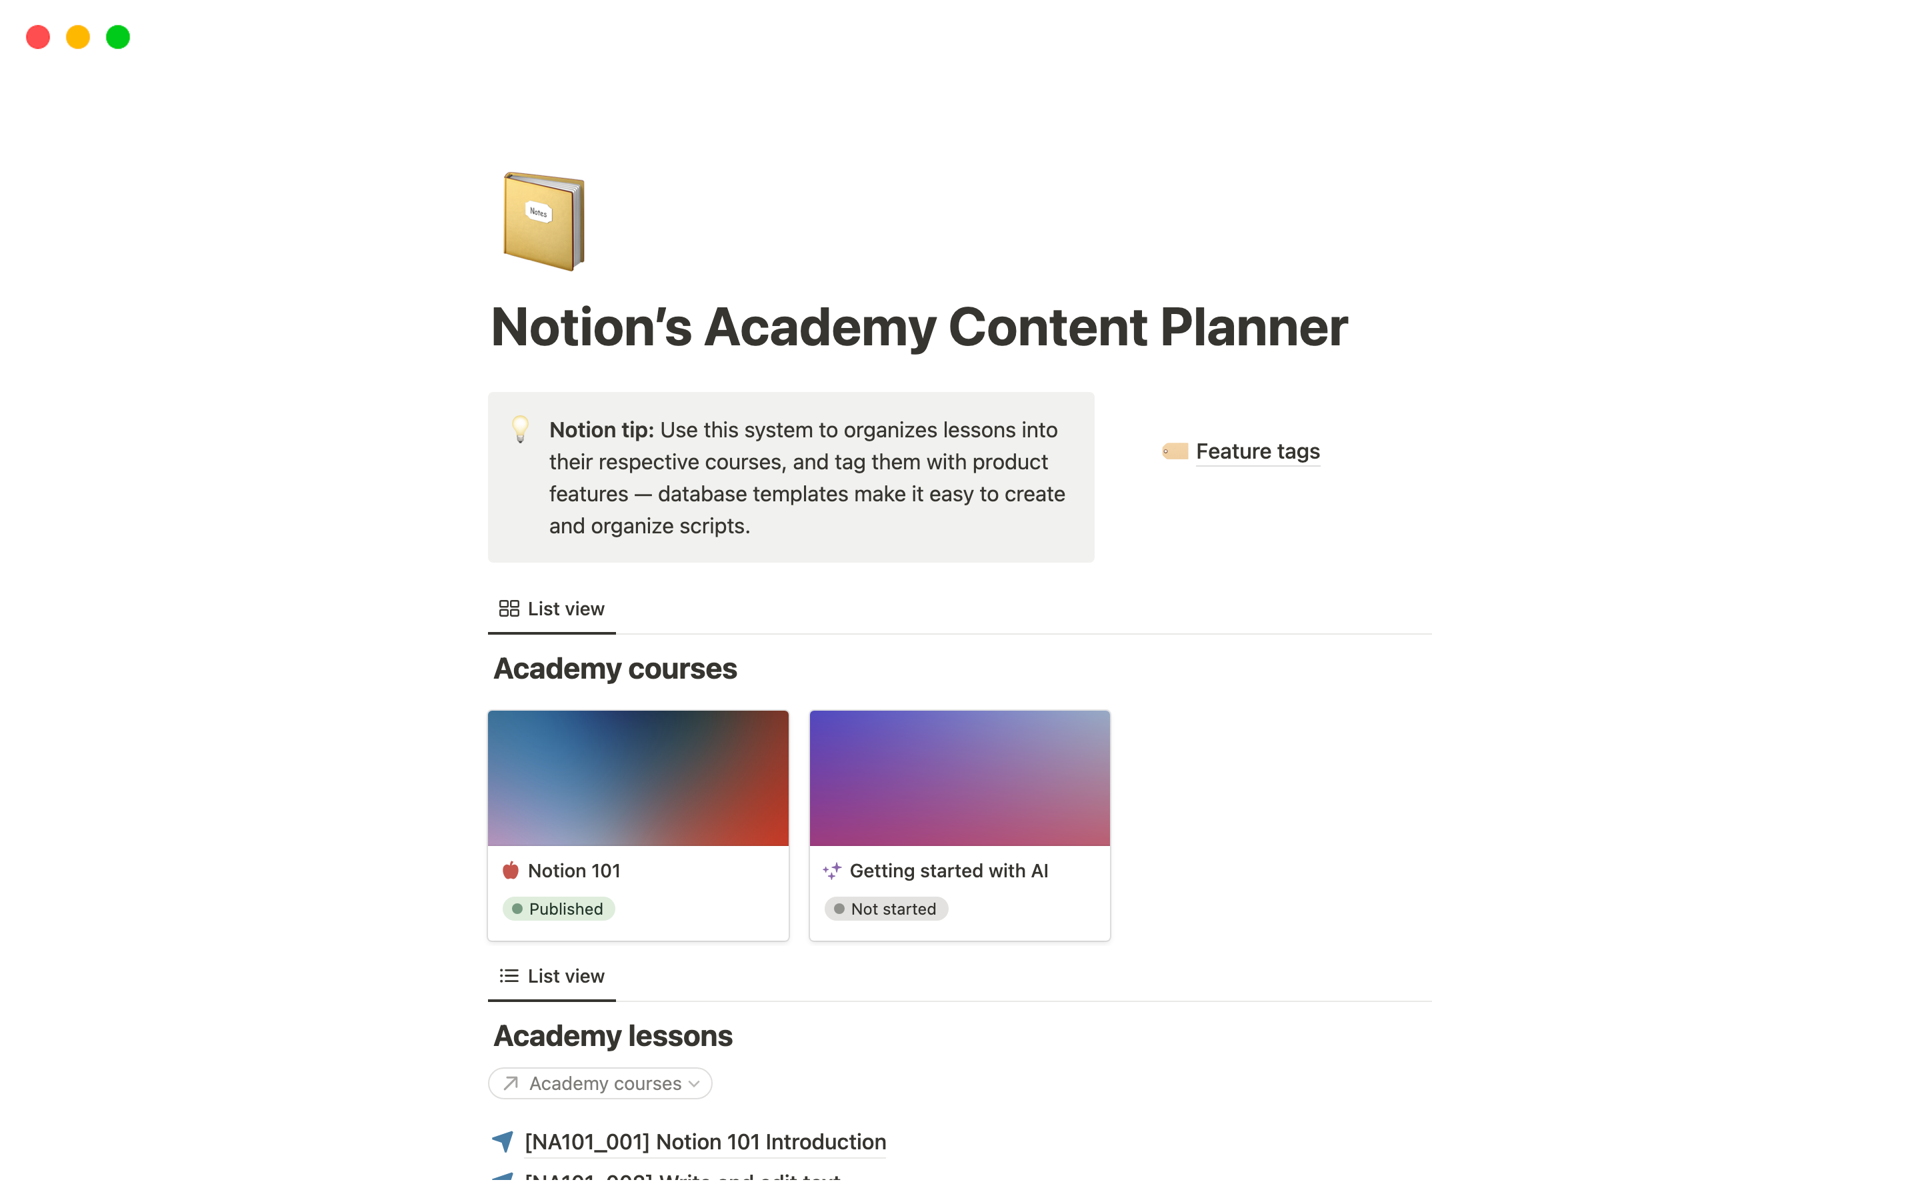 Uma prévia do modelo para Notion’s Academy Content Planner